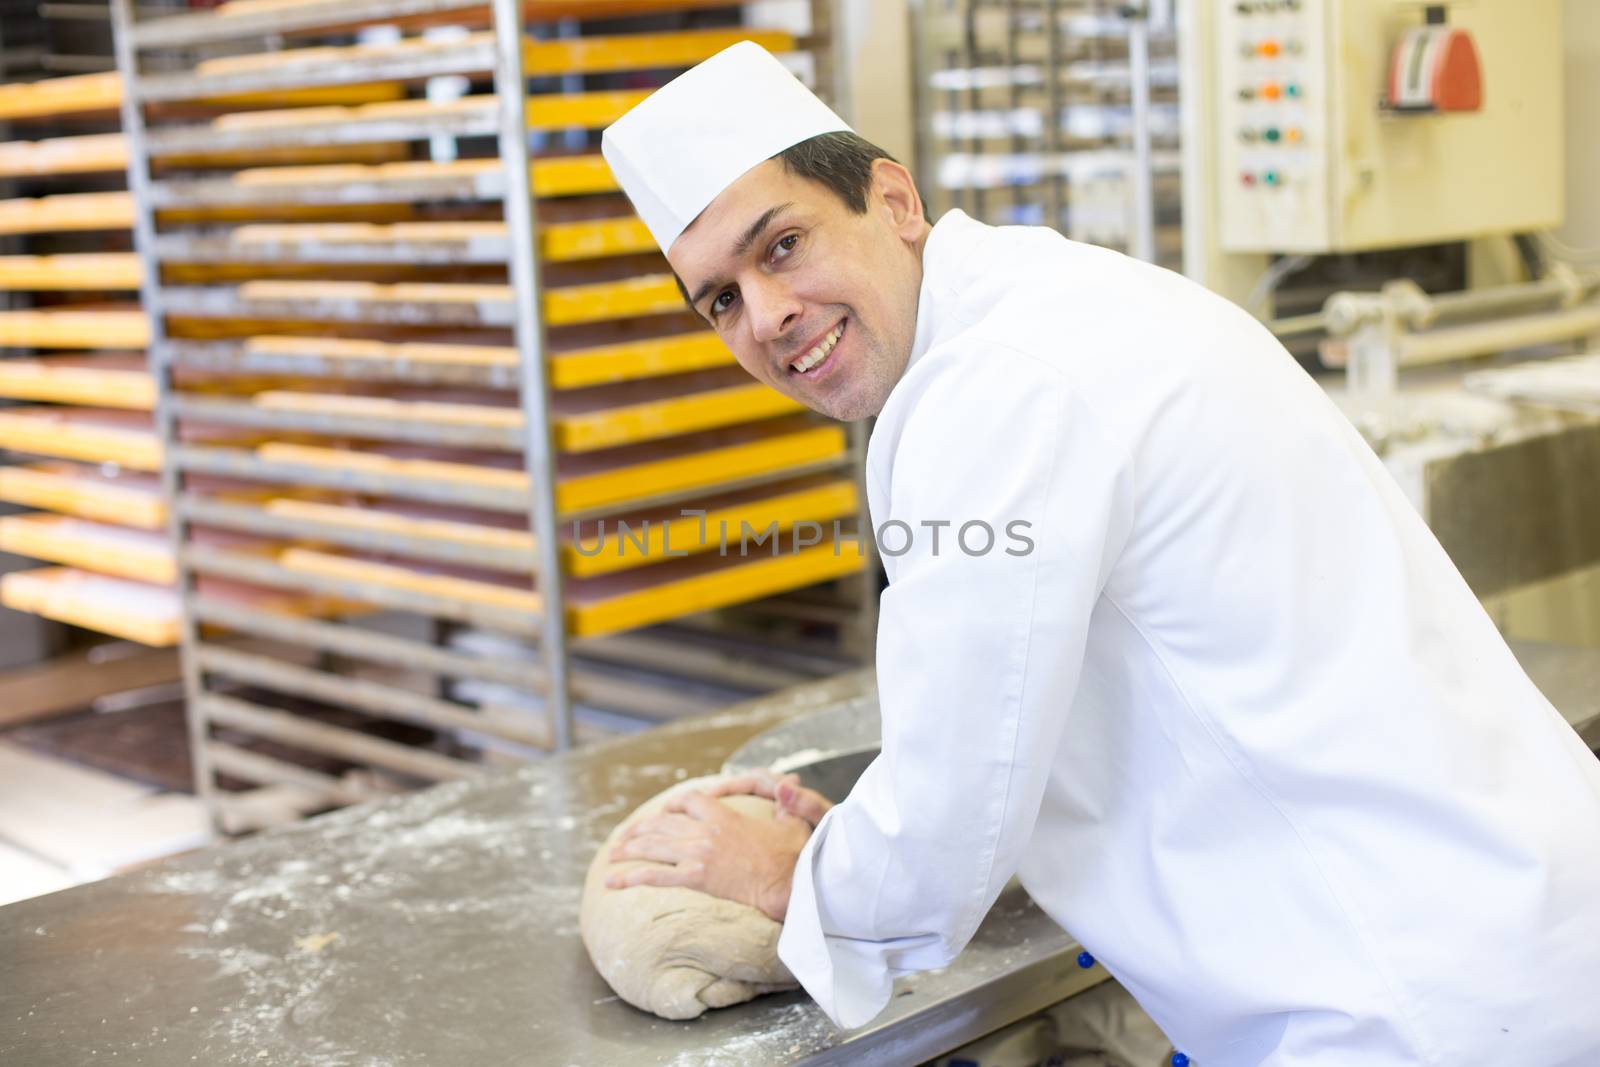 Baker kneading dough in bakery by ikonoklast_fotografie